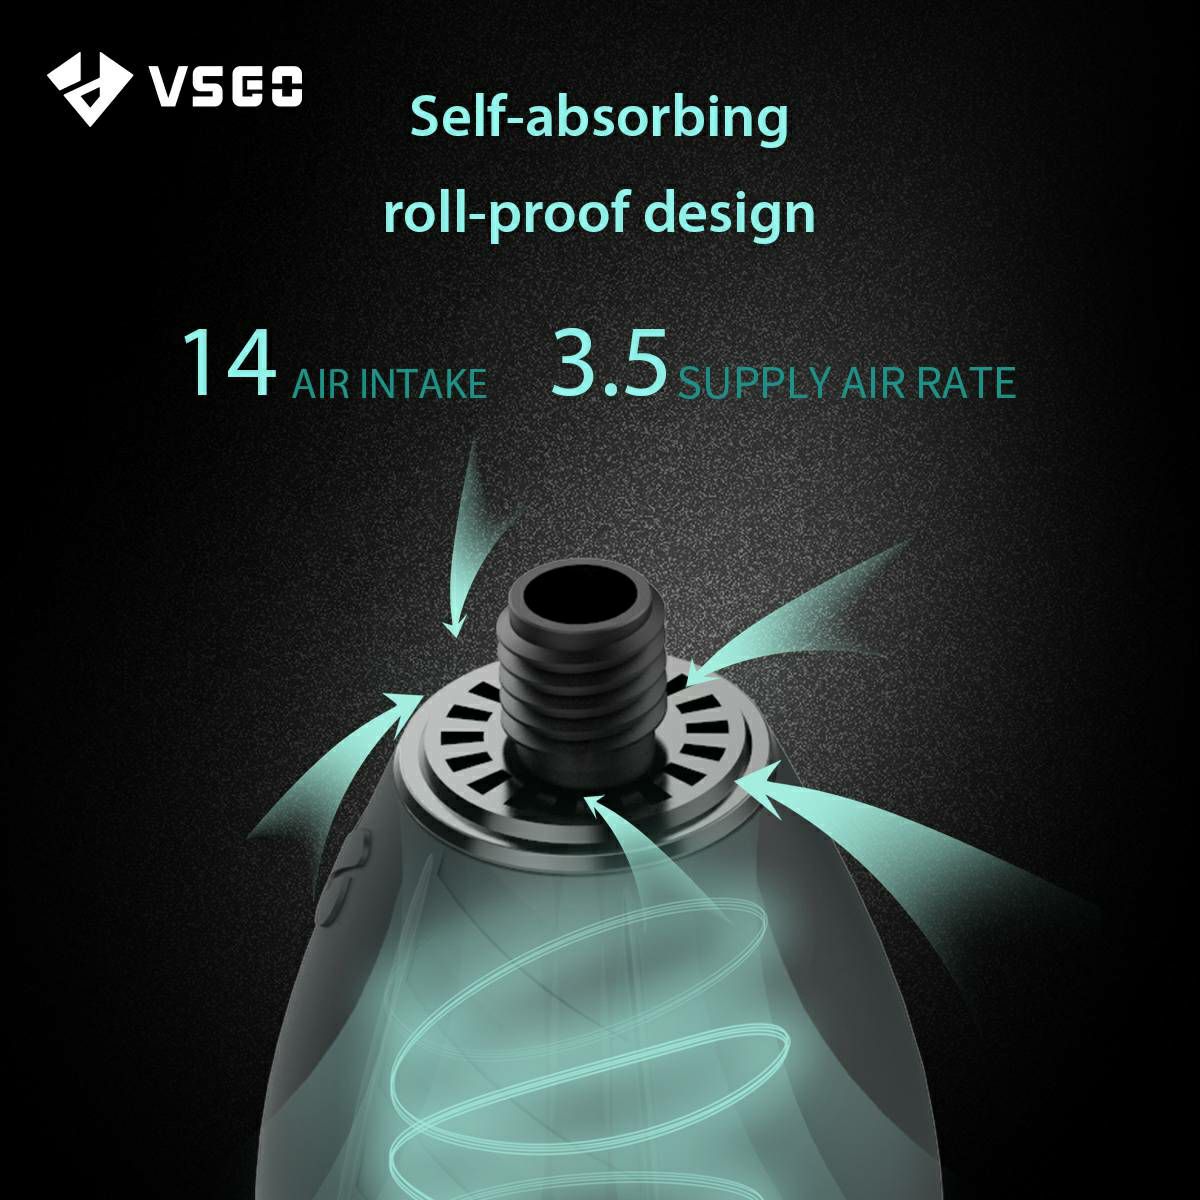 VSGO V-B02E AIR-Move Air Blower Dust Filter puhalica pumpica za ispuhivanje i čišćenje fotoaparata i objektiva